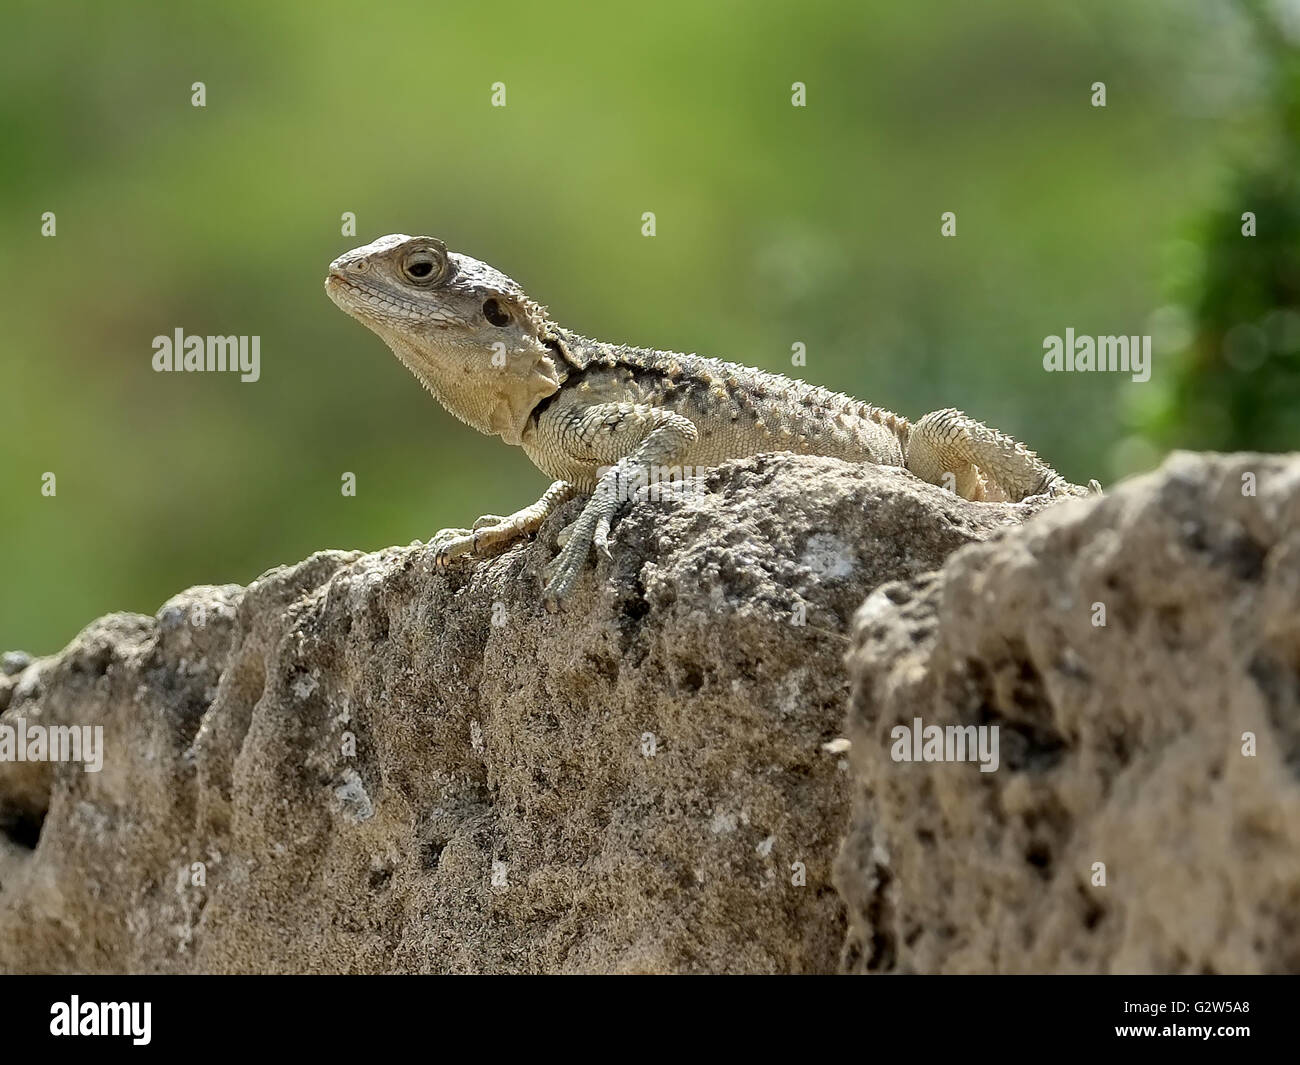 Lézard Gecko (infraordre Gekkota) sur un rocher, les salamis, Famagusta, (Gazimagusa), Chypre du Nord. Banque D'Images